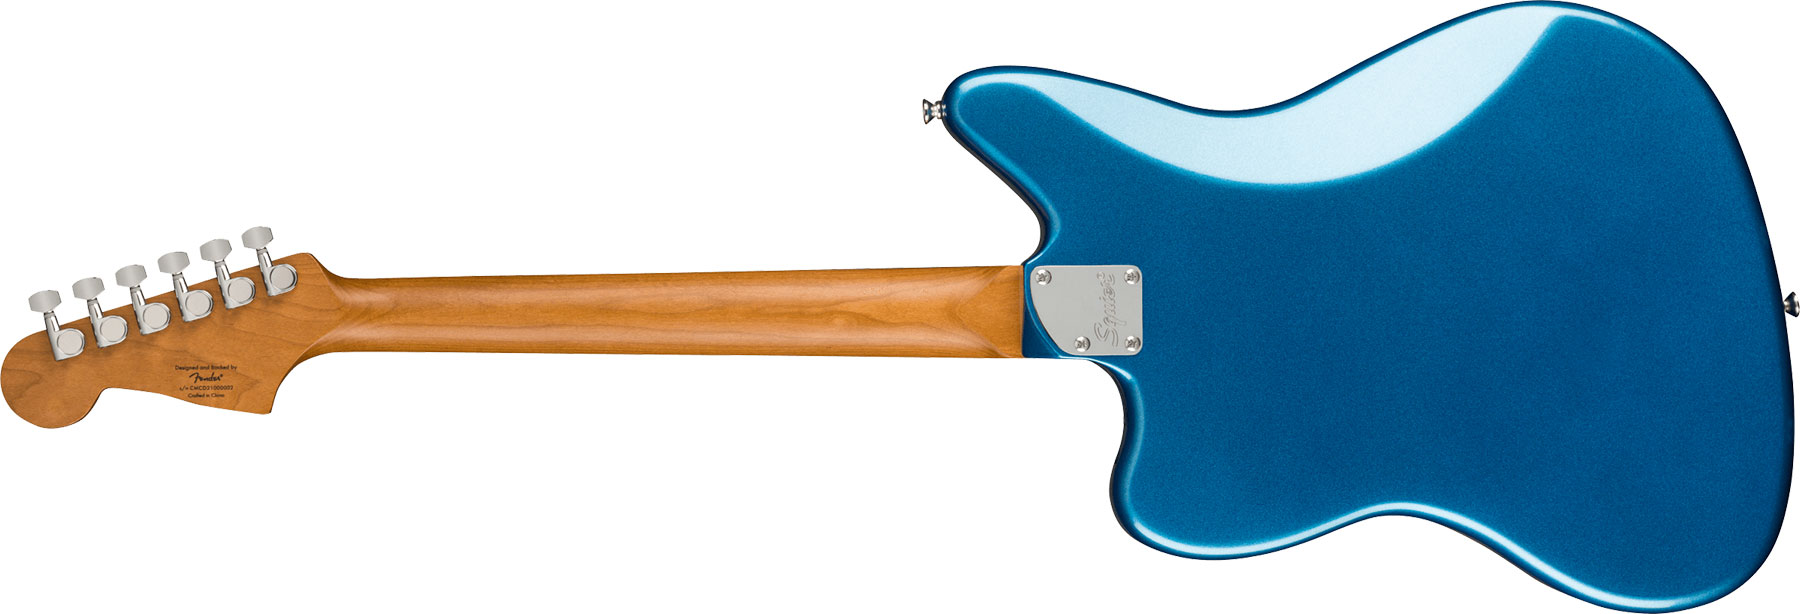 Squier Jaguar Contemporary Hh St Fsr Ltd Ht Lau - Lake Placid Blue - Retro rock electric guitar - Variation 1